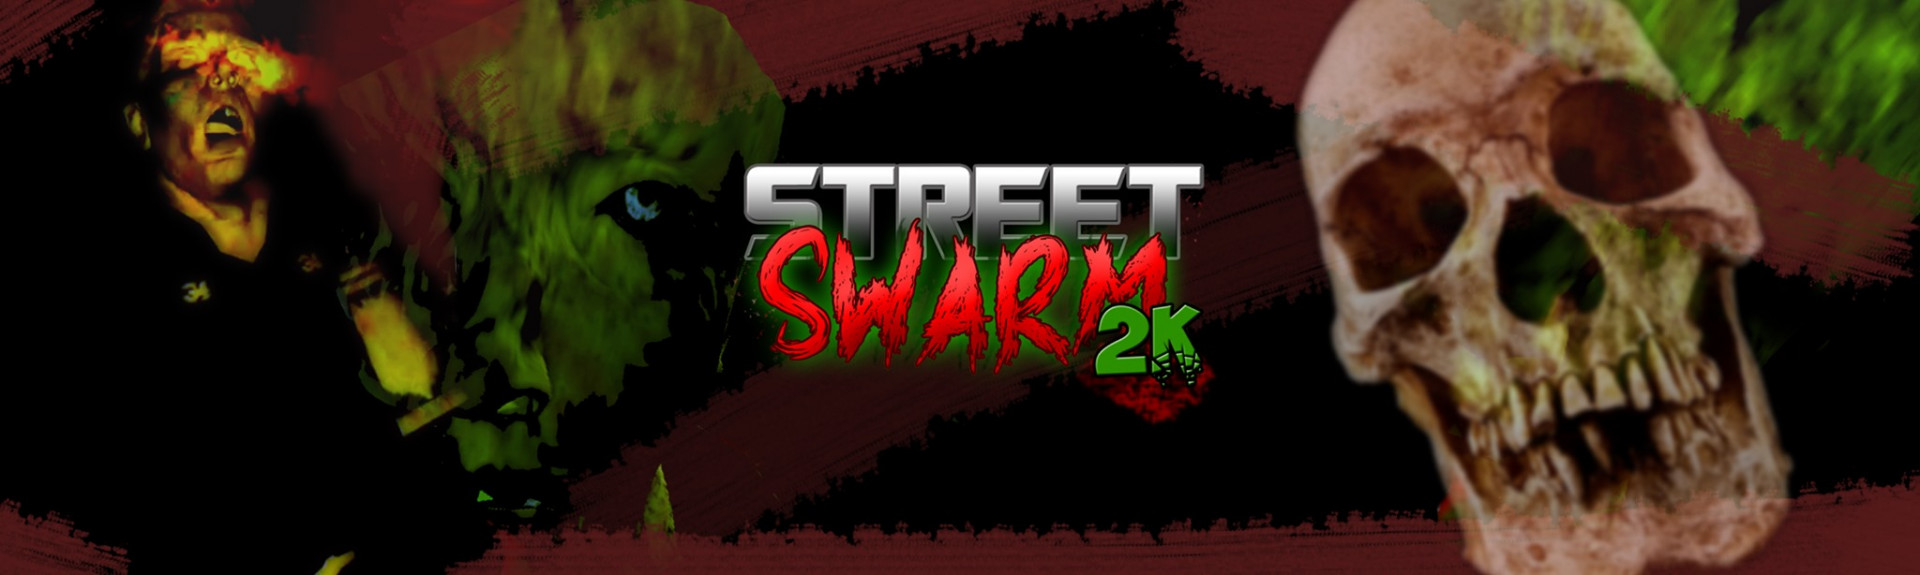 Street Swarm 2K